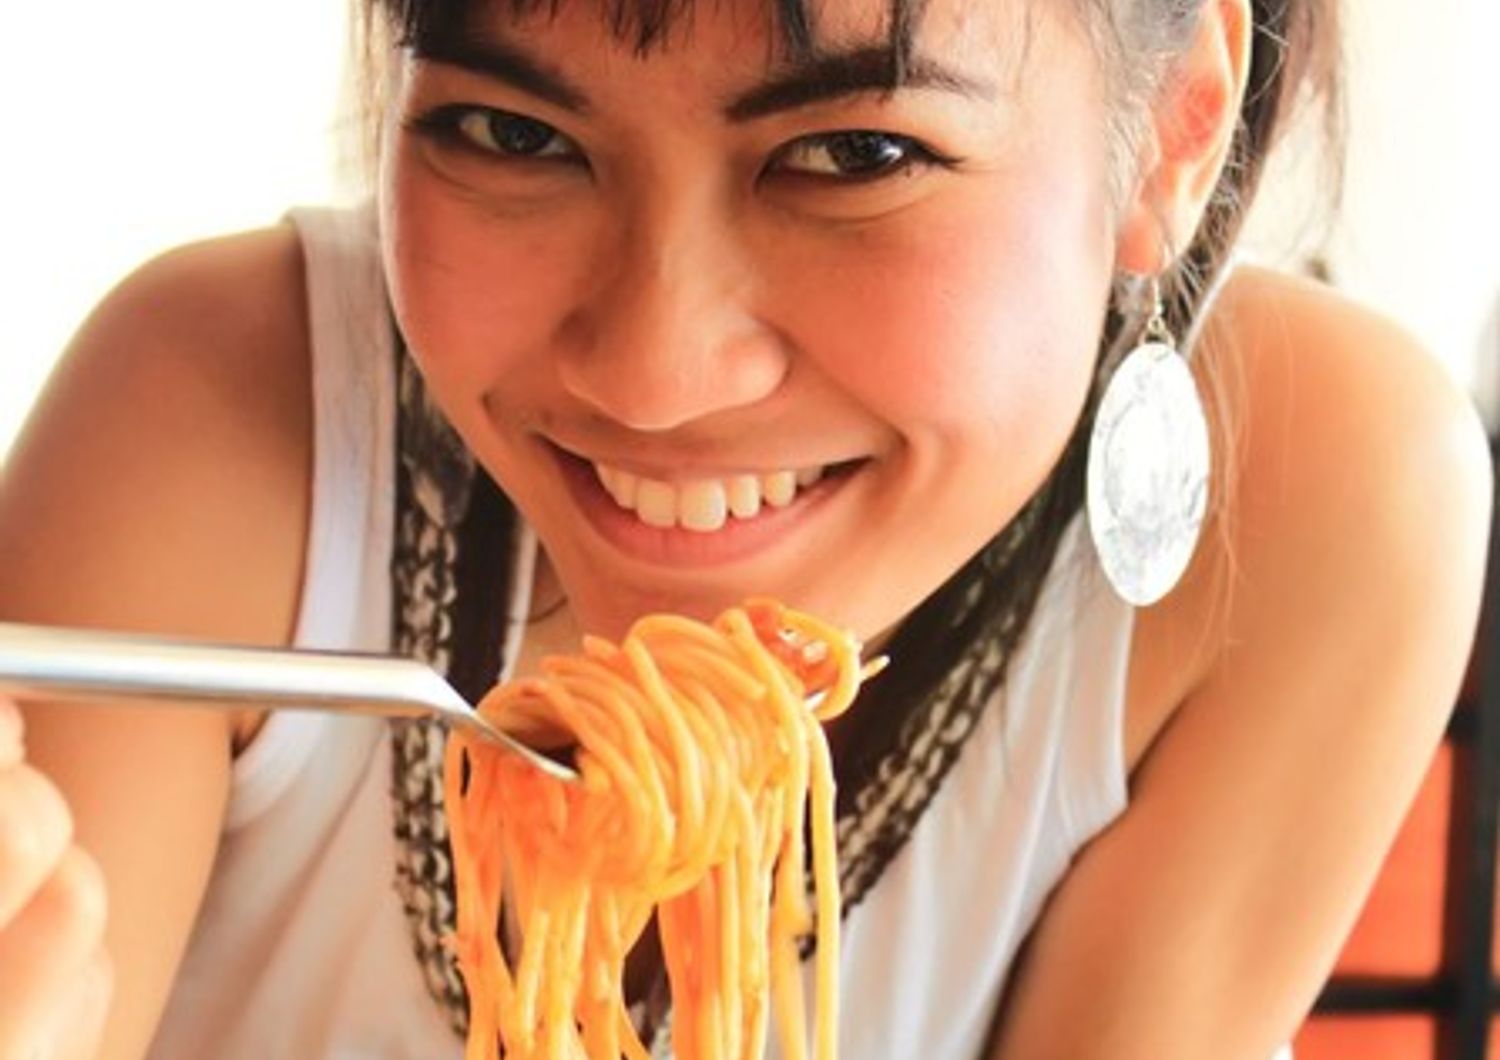 &nbsp;Una ragazza mangia gli spaghetti